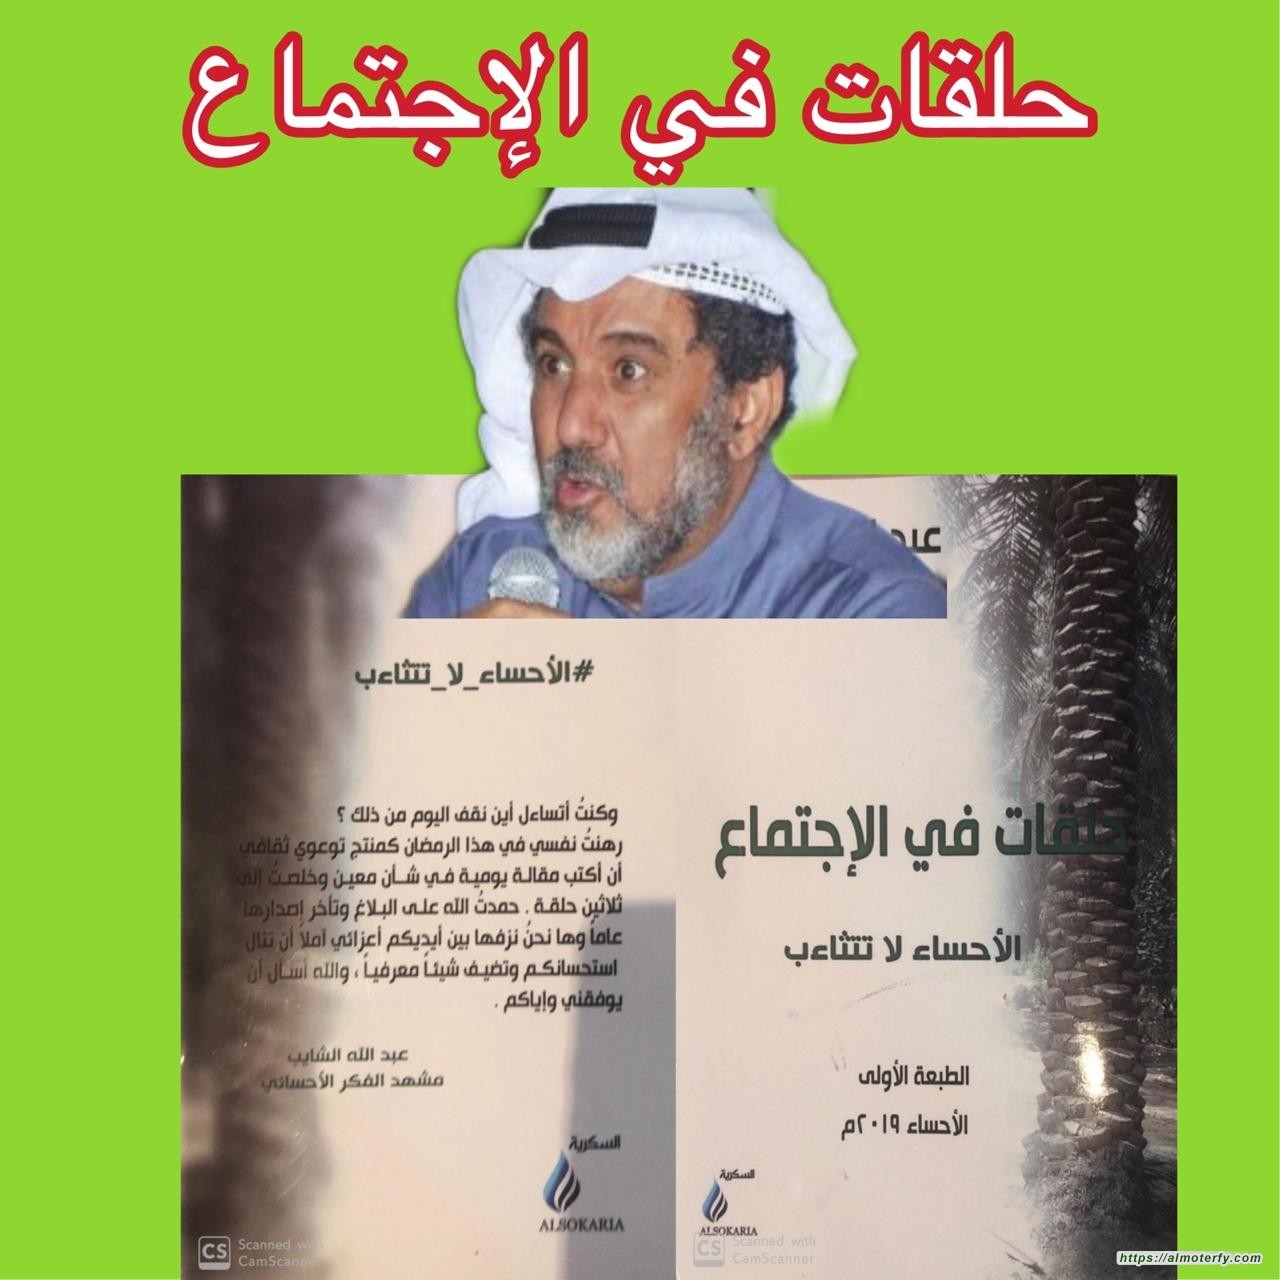 صدور كتاب جديد للمهندس عبدالله الشايب  بعنوان حلقات في الإجتماع (الاحساء لاتتثاءب )